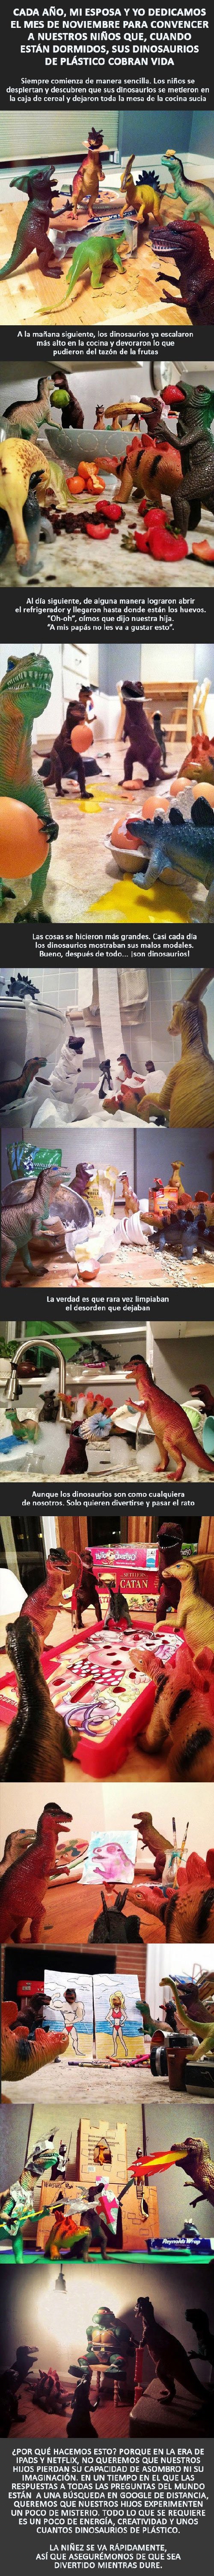 Papás haciendo un buen trabajo - Historia de dinosaurios